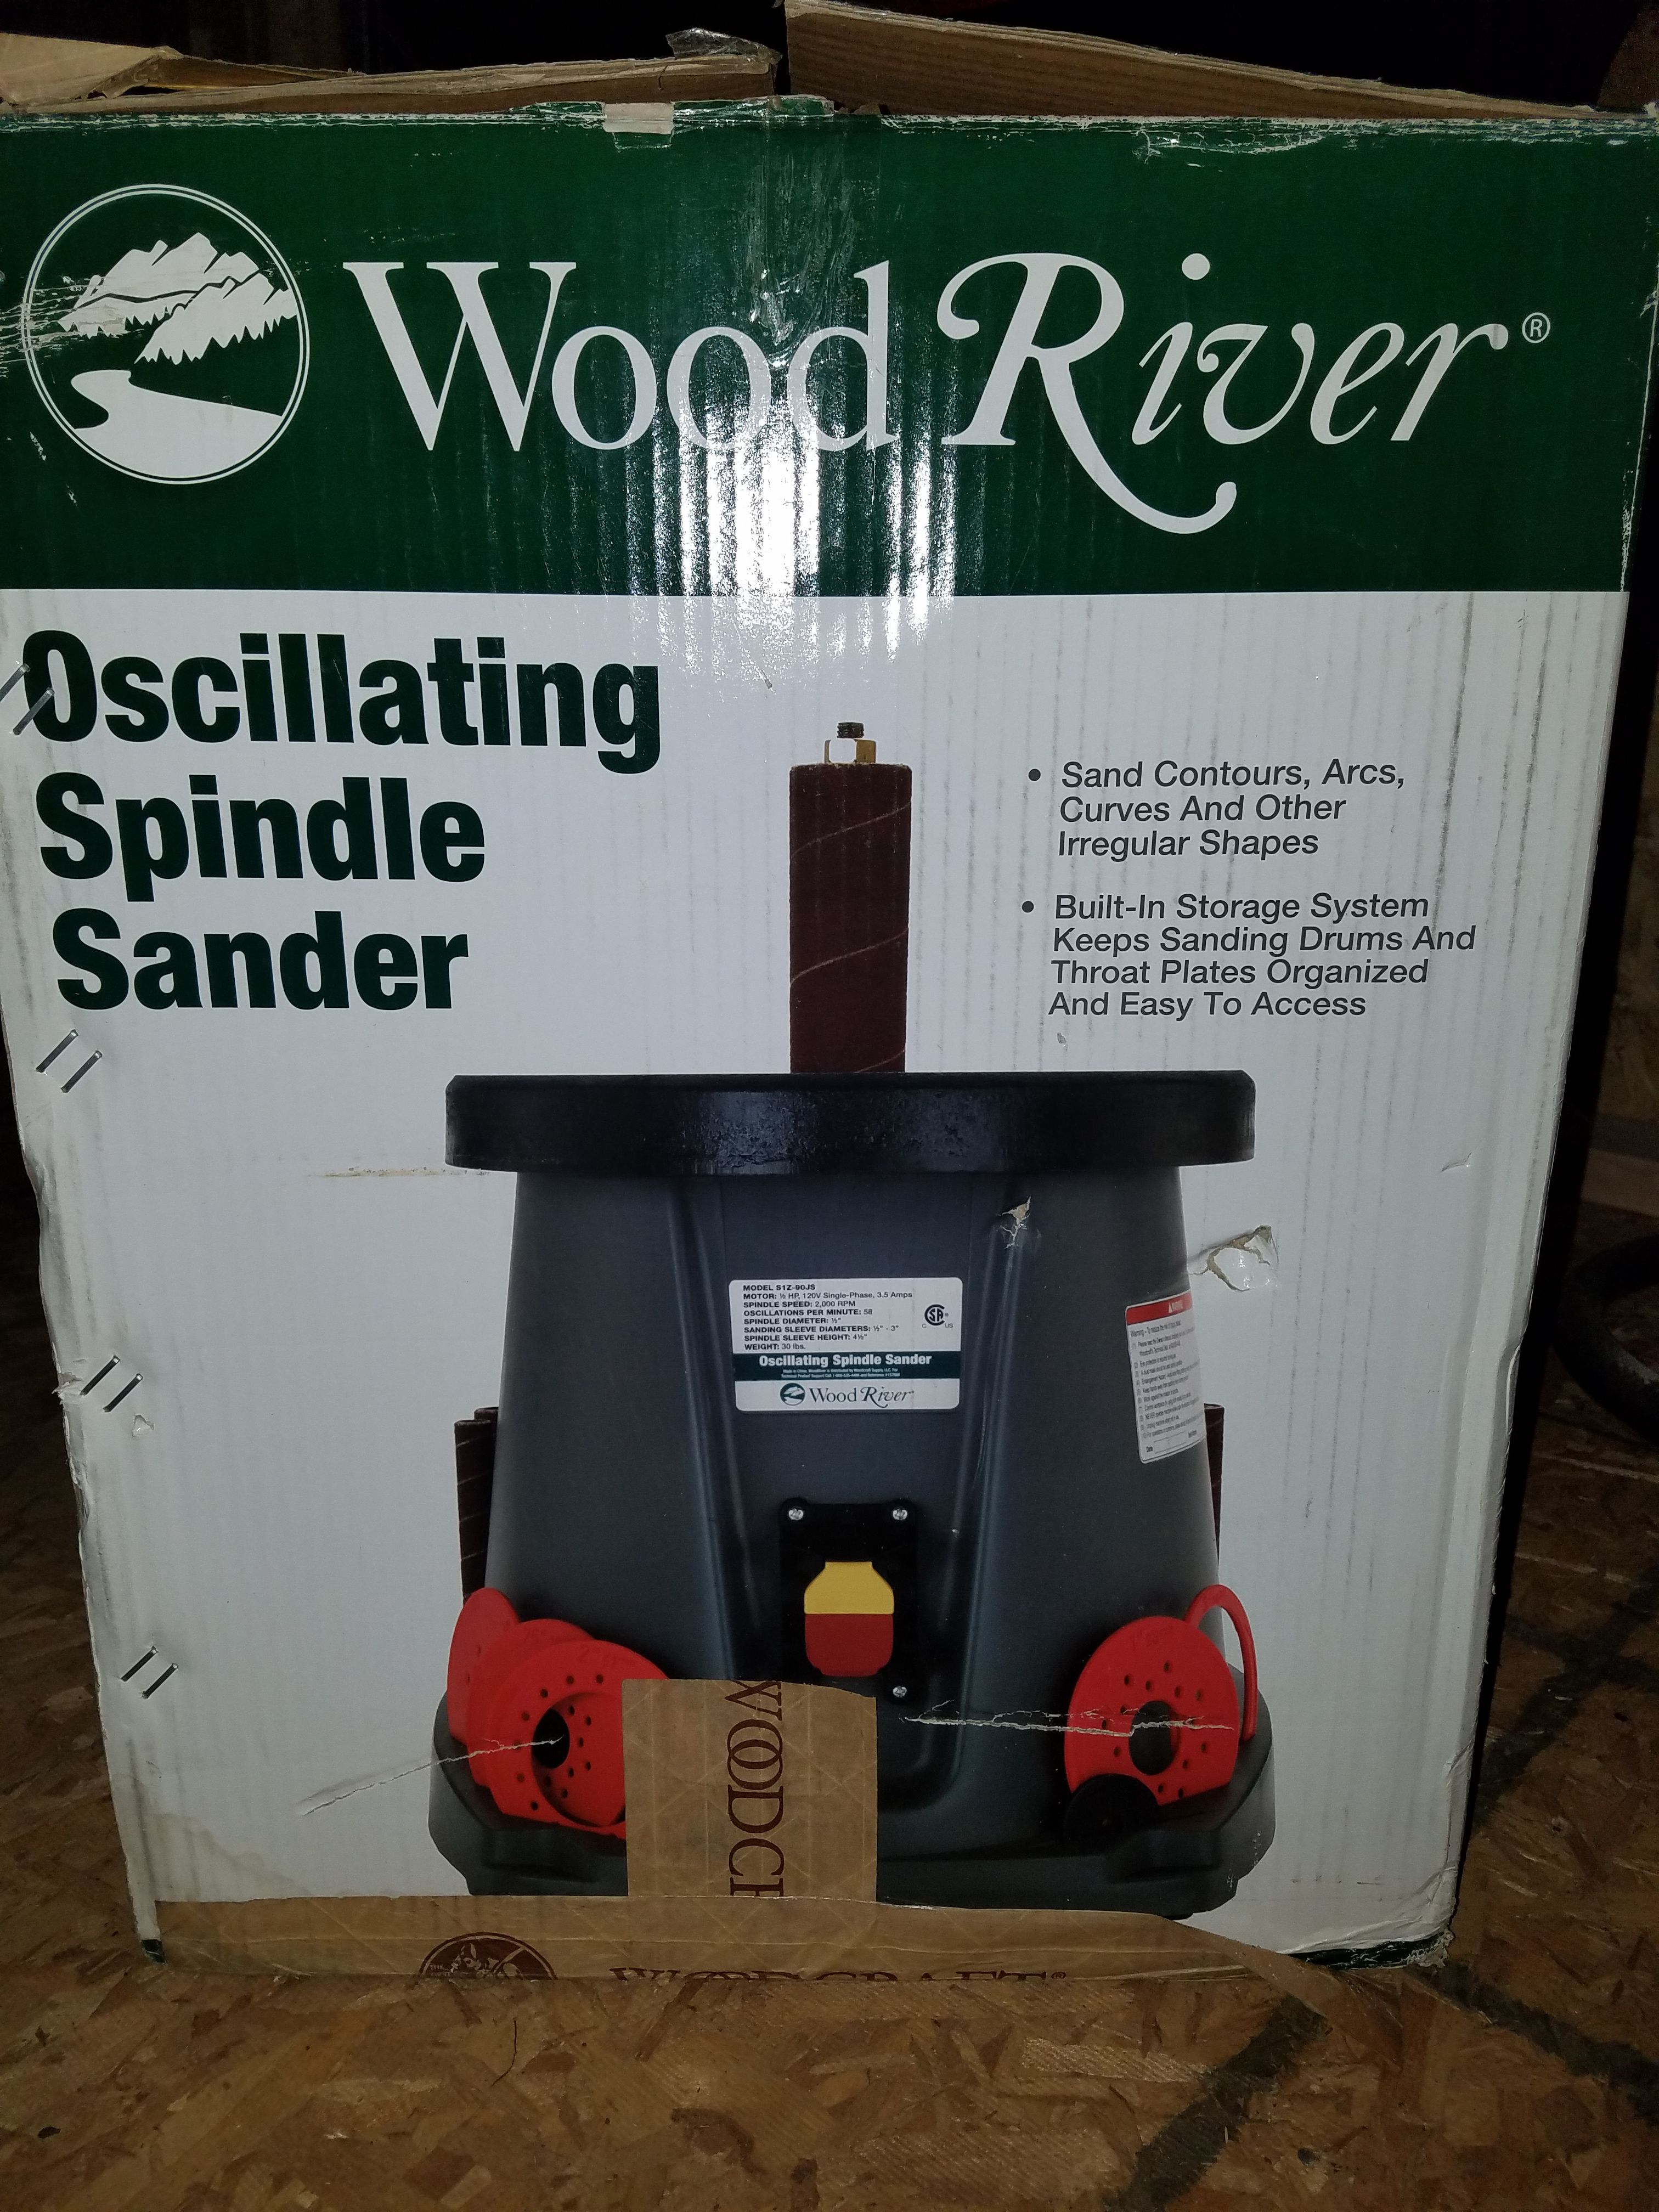 WoodRiver Oscillating Spindle Sander